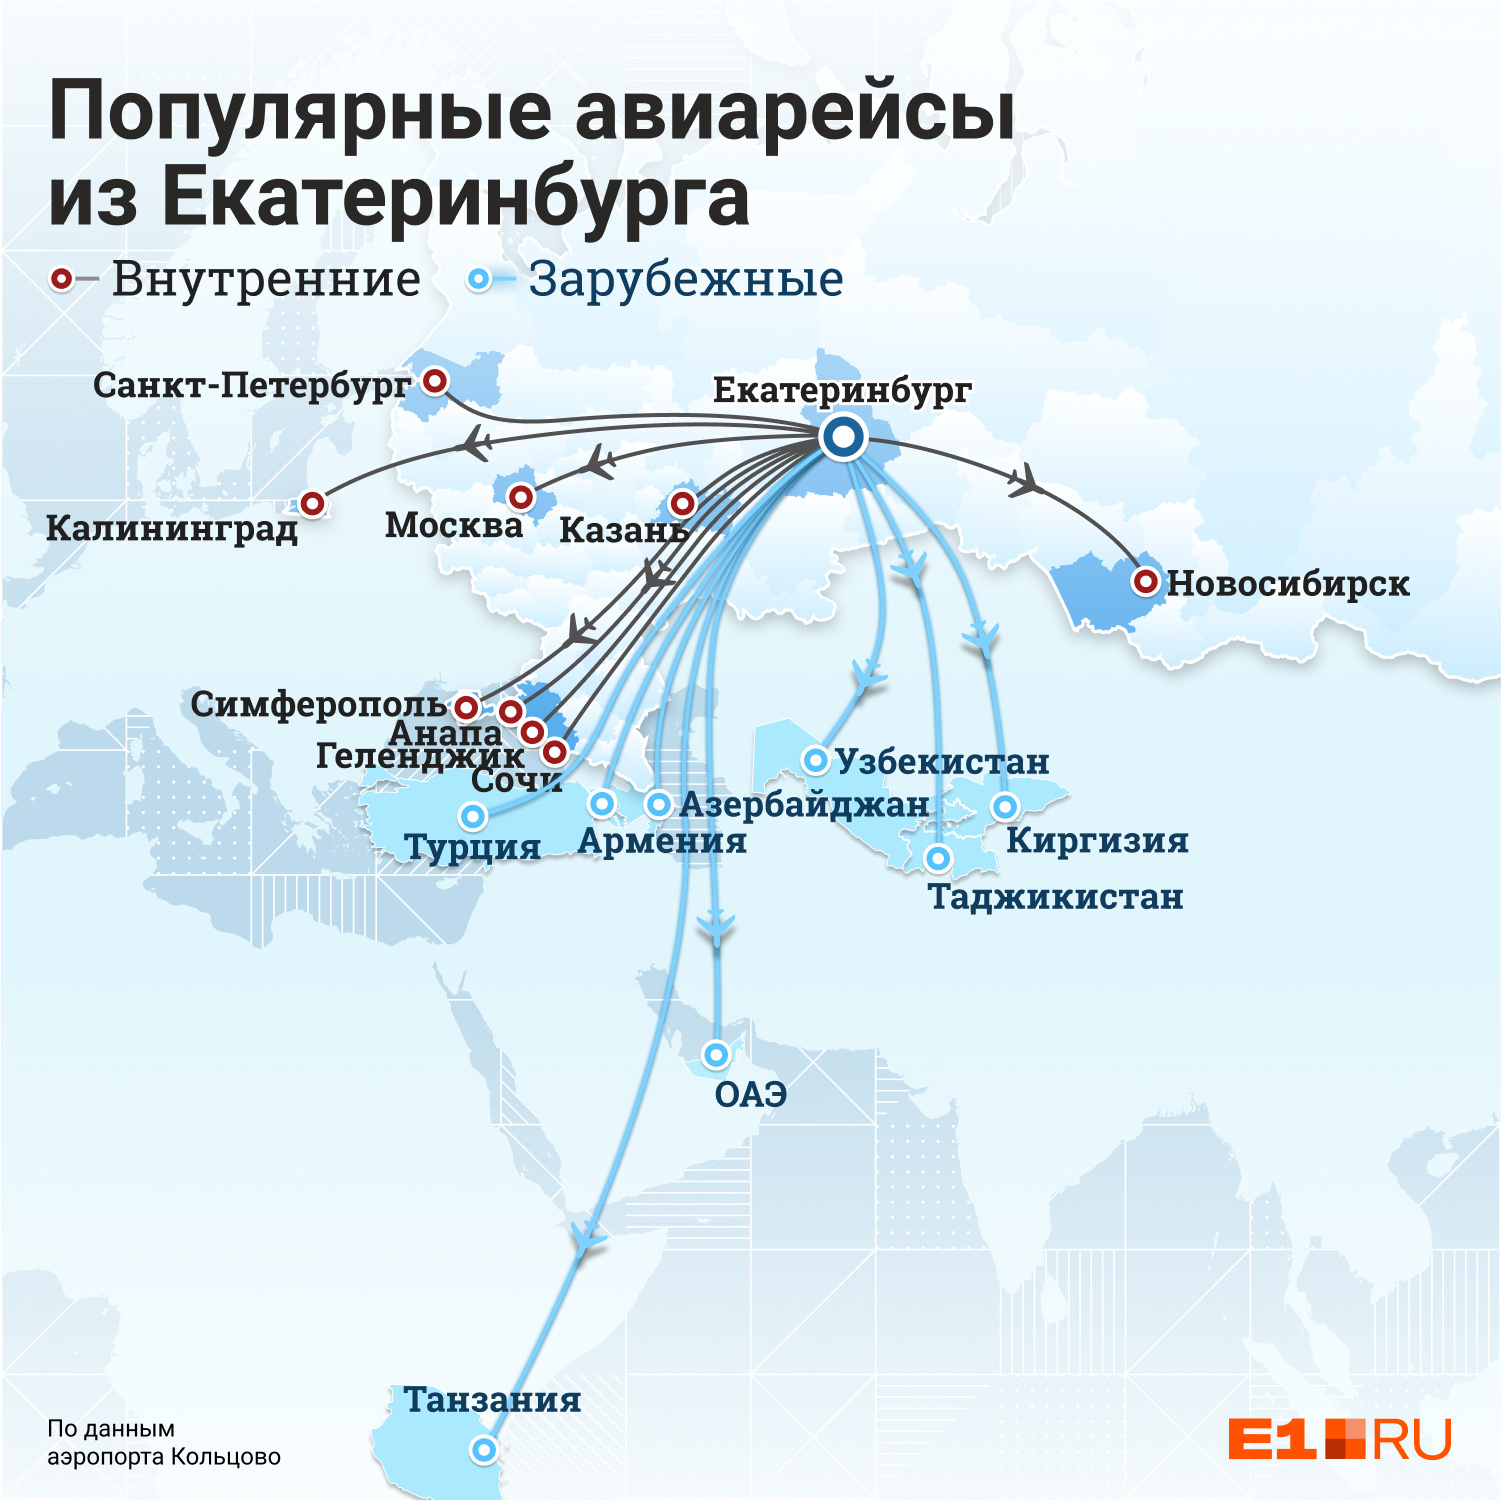 Мы отметили на карте города и страны, куда уже можно улететь из Екатеринбурга